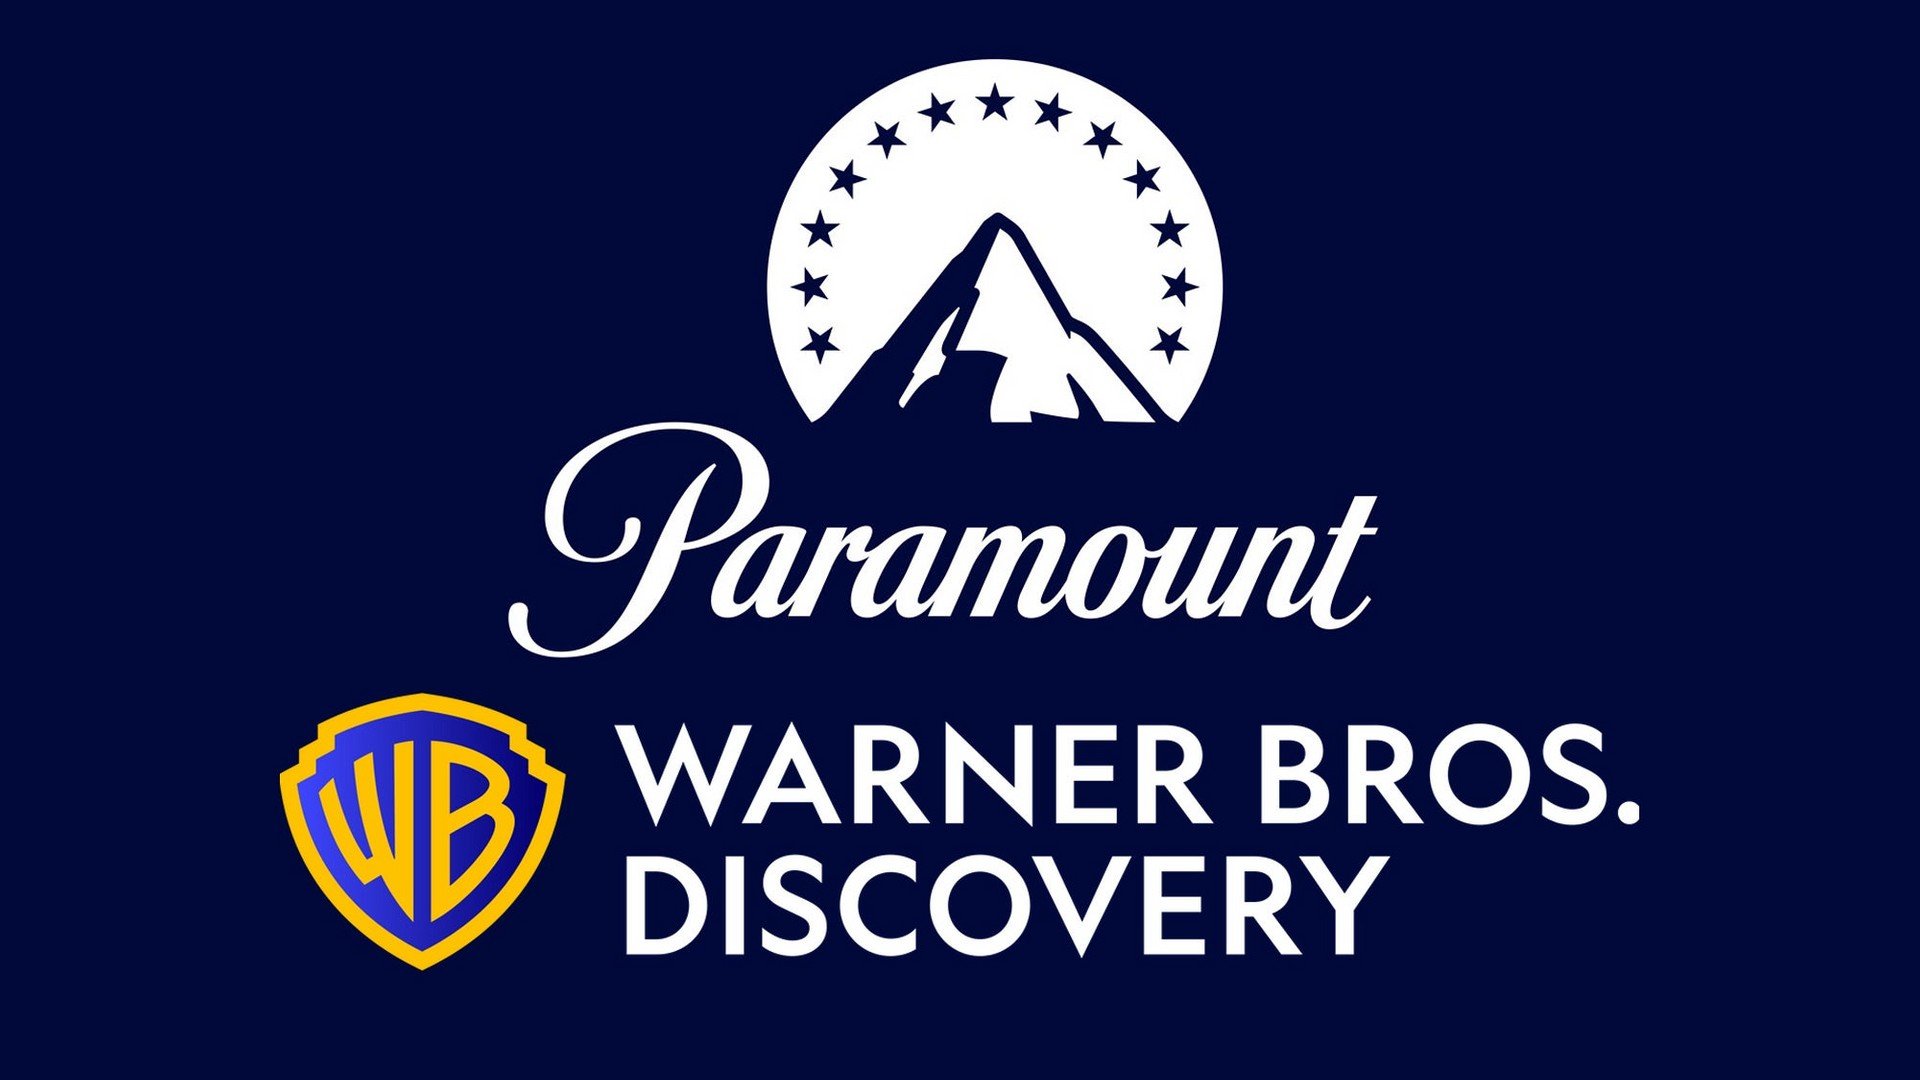 Warner Bros. Discovery e Paramount podem se fundir em uma única